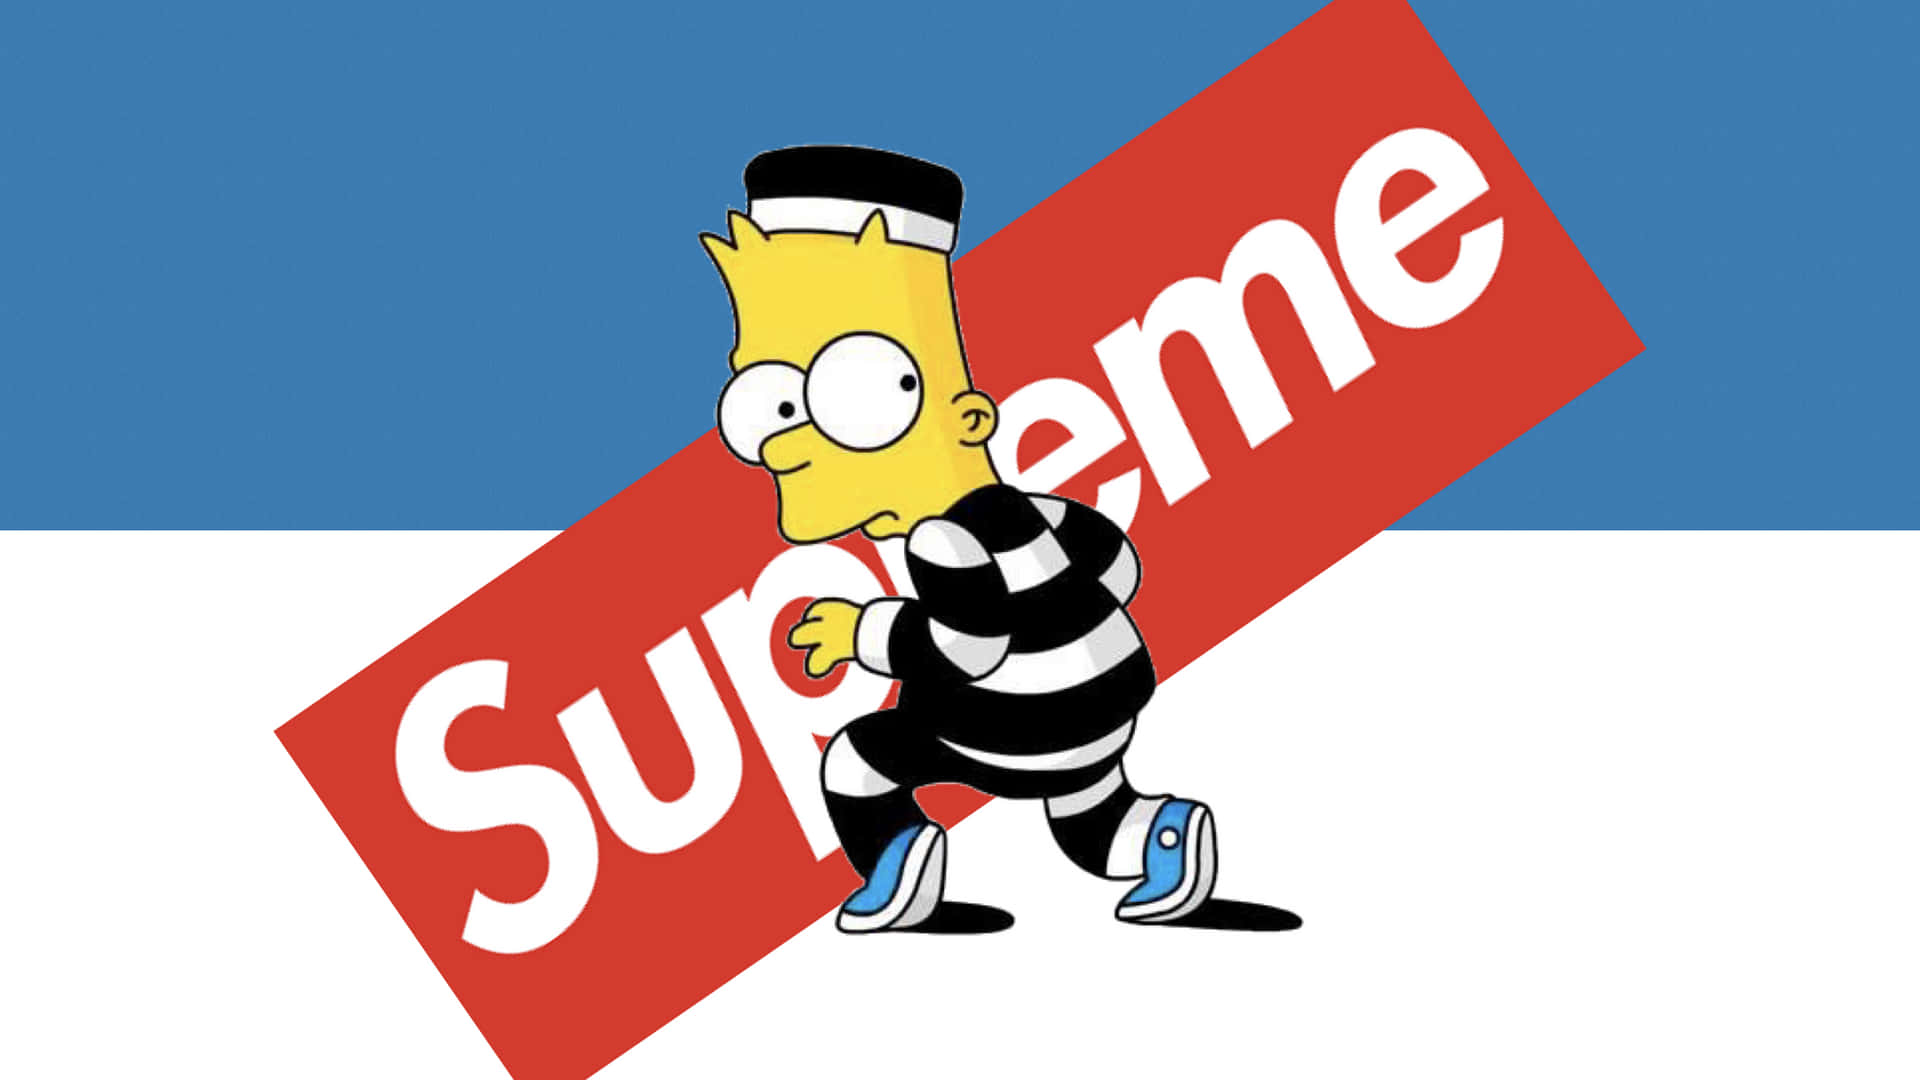 [100 ] Fondos De Fotos De Fondos De Pantalla Geniales De Bart Simpson Supreme